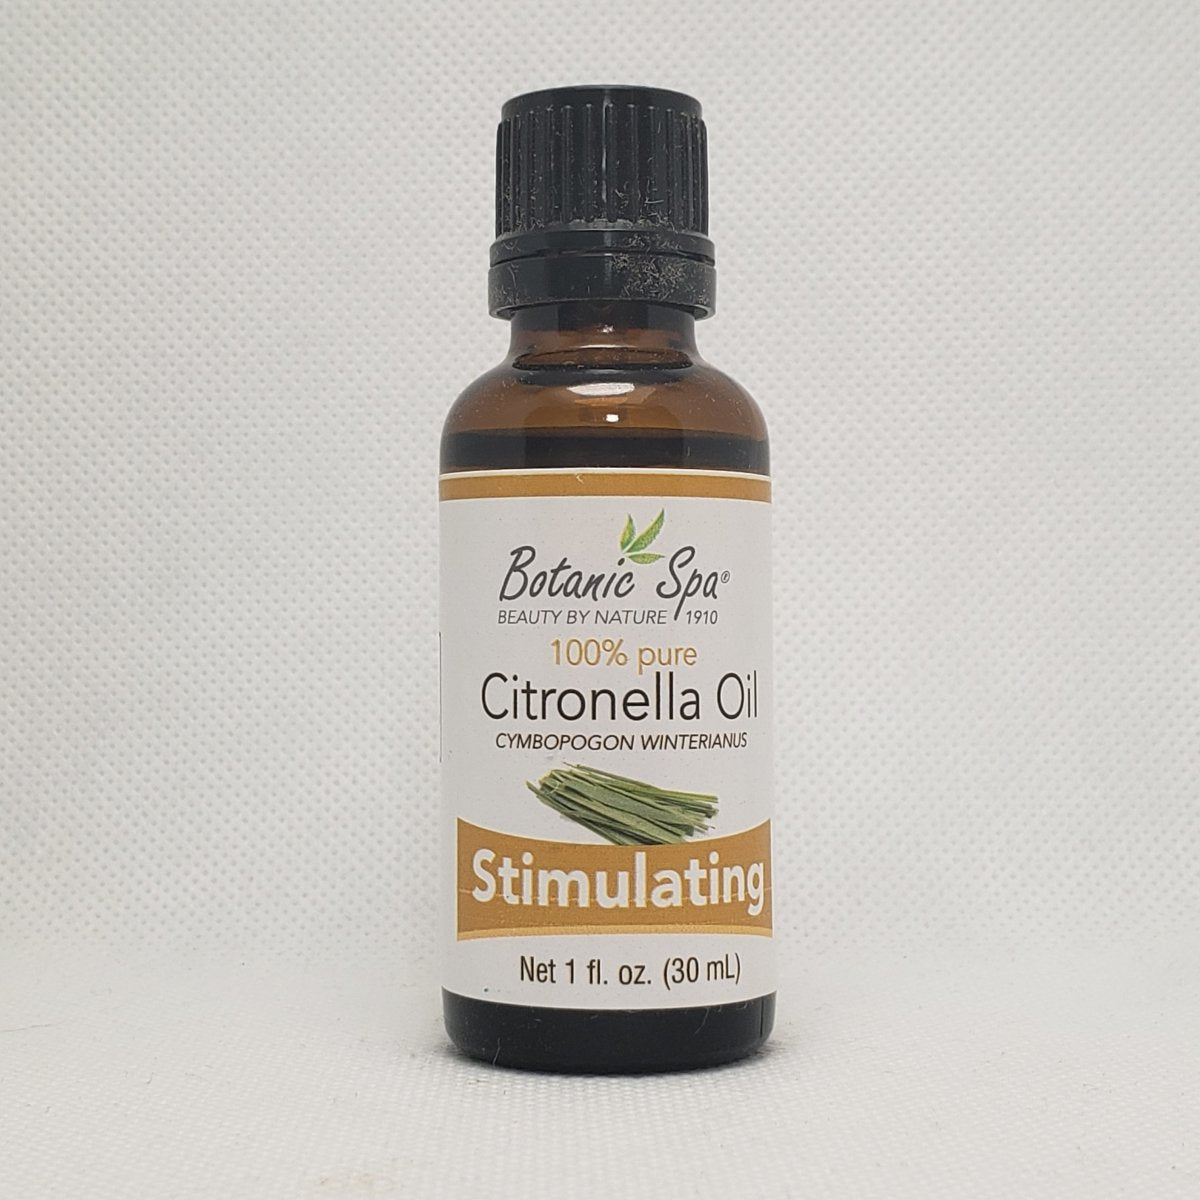 100% Pure - Citronella Oil - Stimulating - Cymbopogon Winterianus - 1oz - Botanic Spa